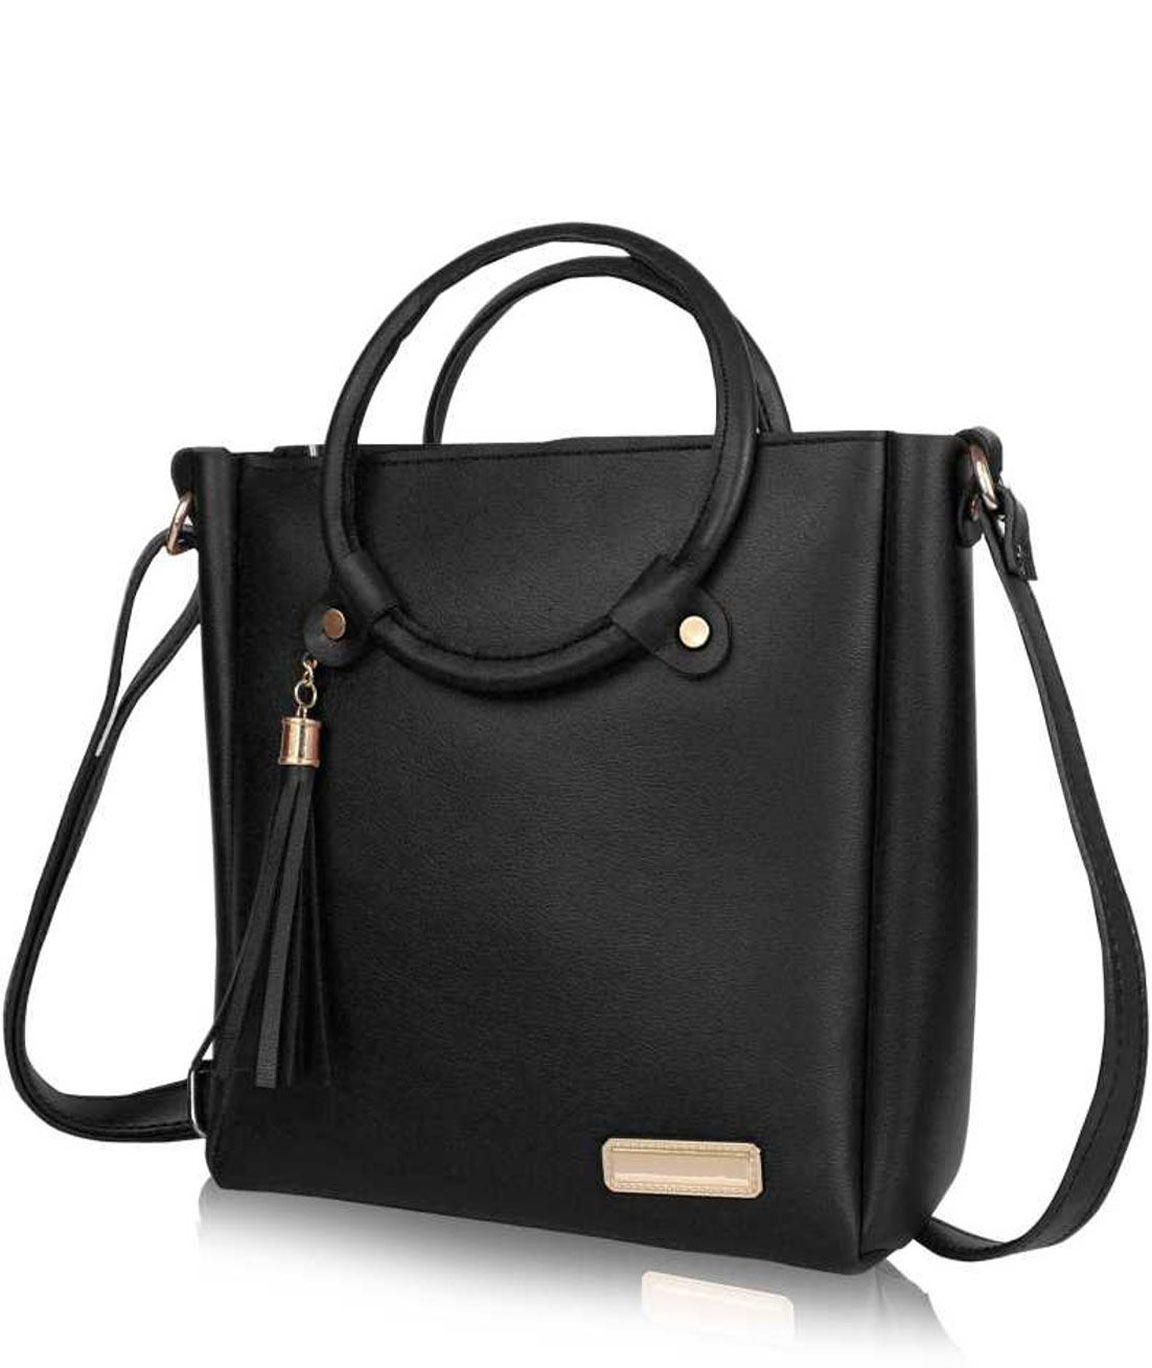 Transparent Shoulder Bag Women | Transparent Handbag Women | Messenger Bags  - Bags Women - Aliexpress